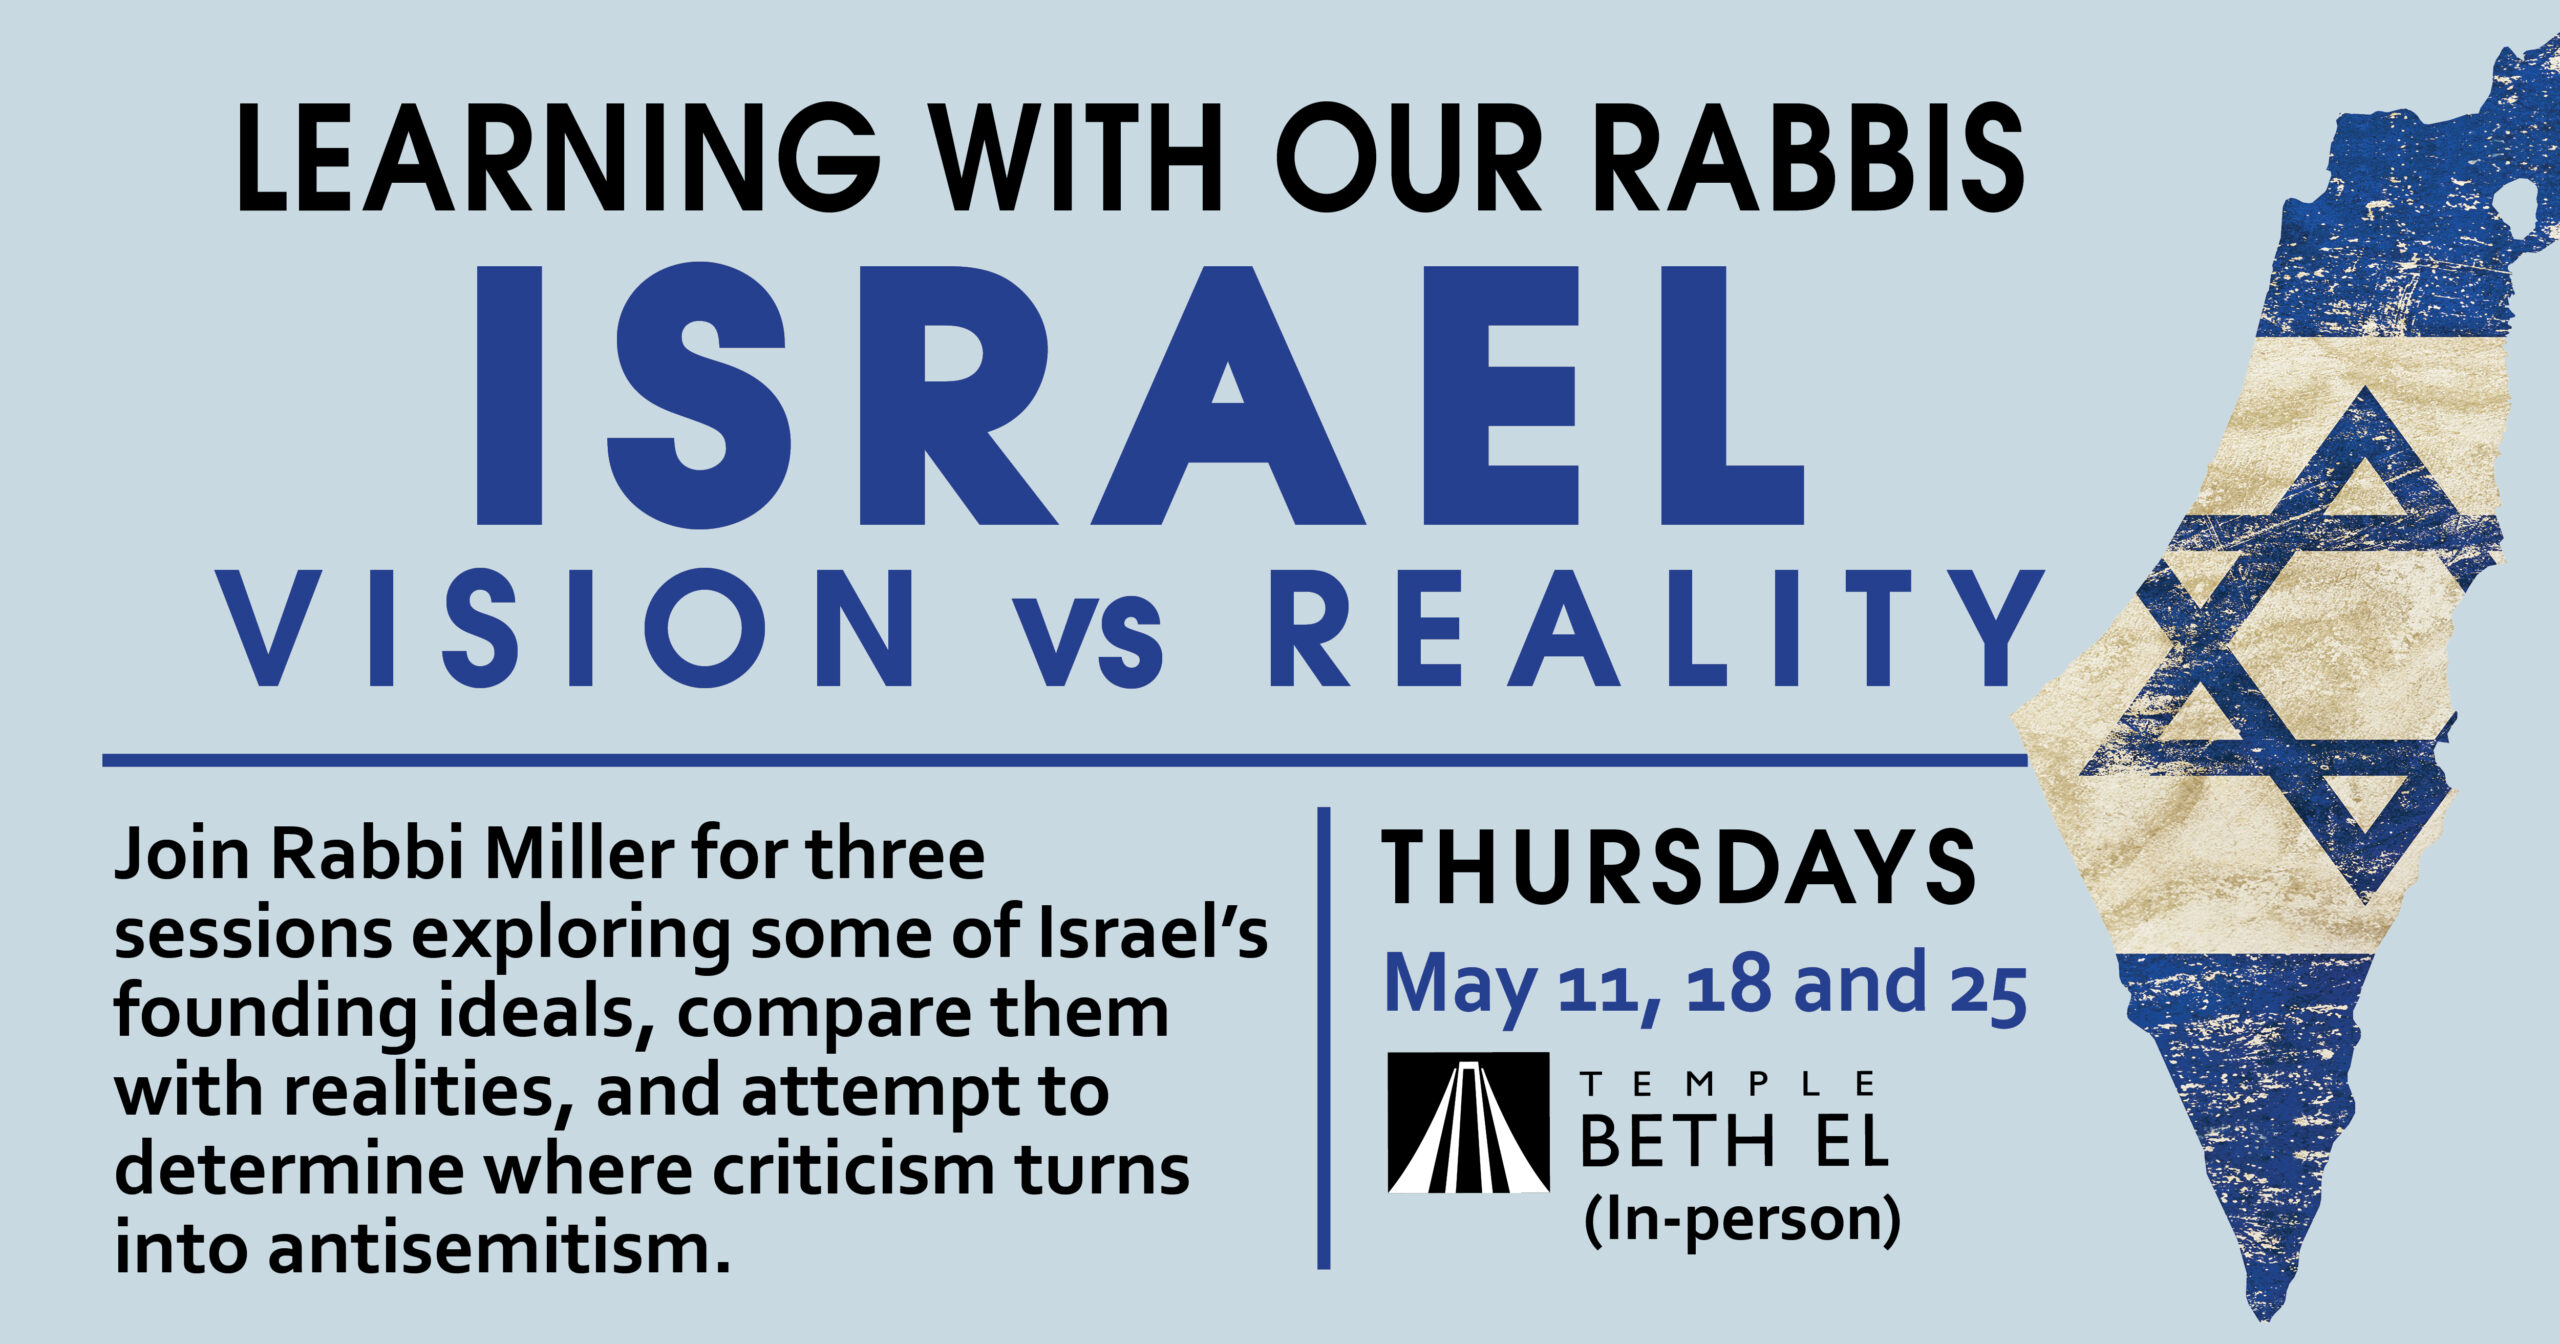 Israel: Vision vs Reality